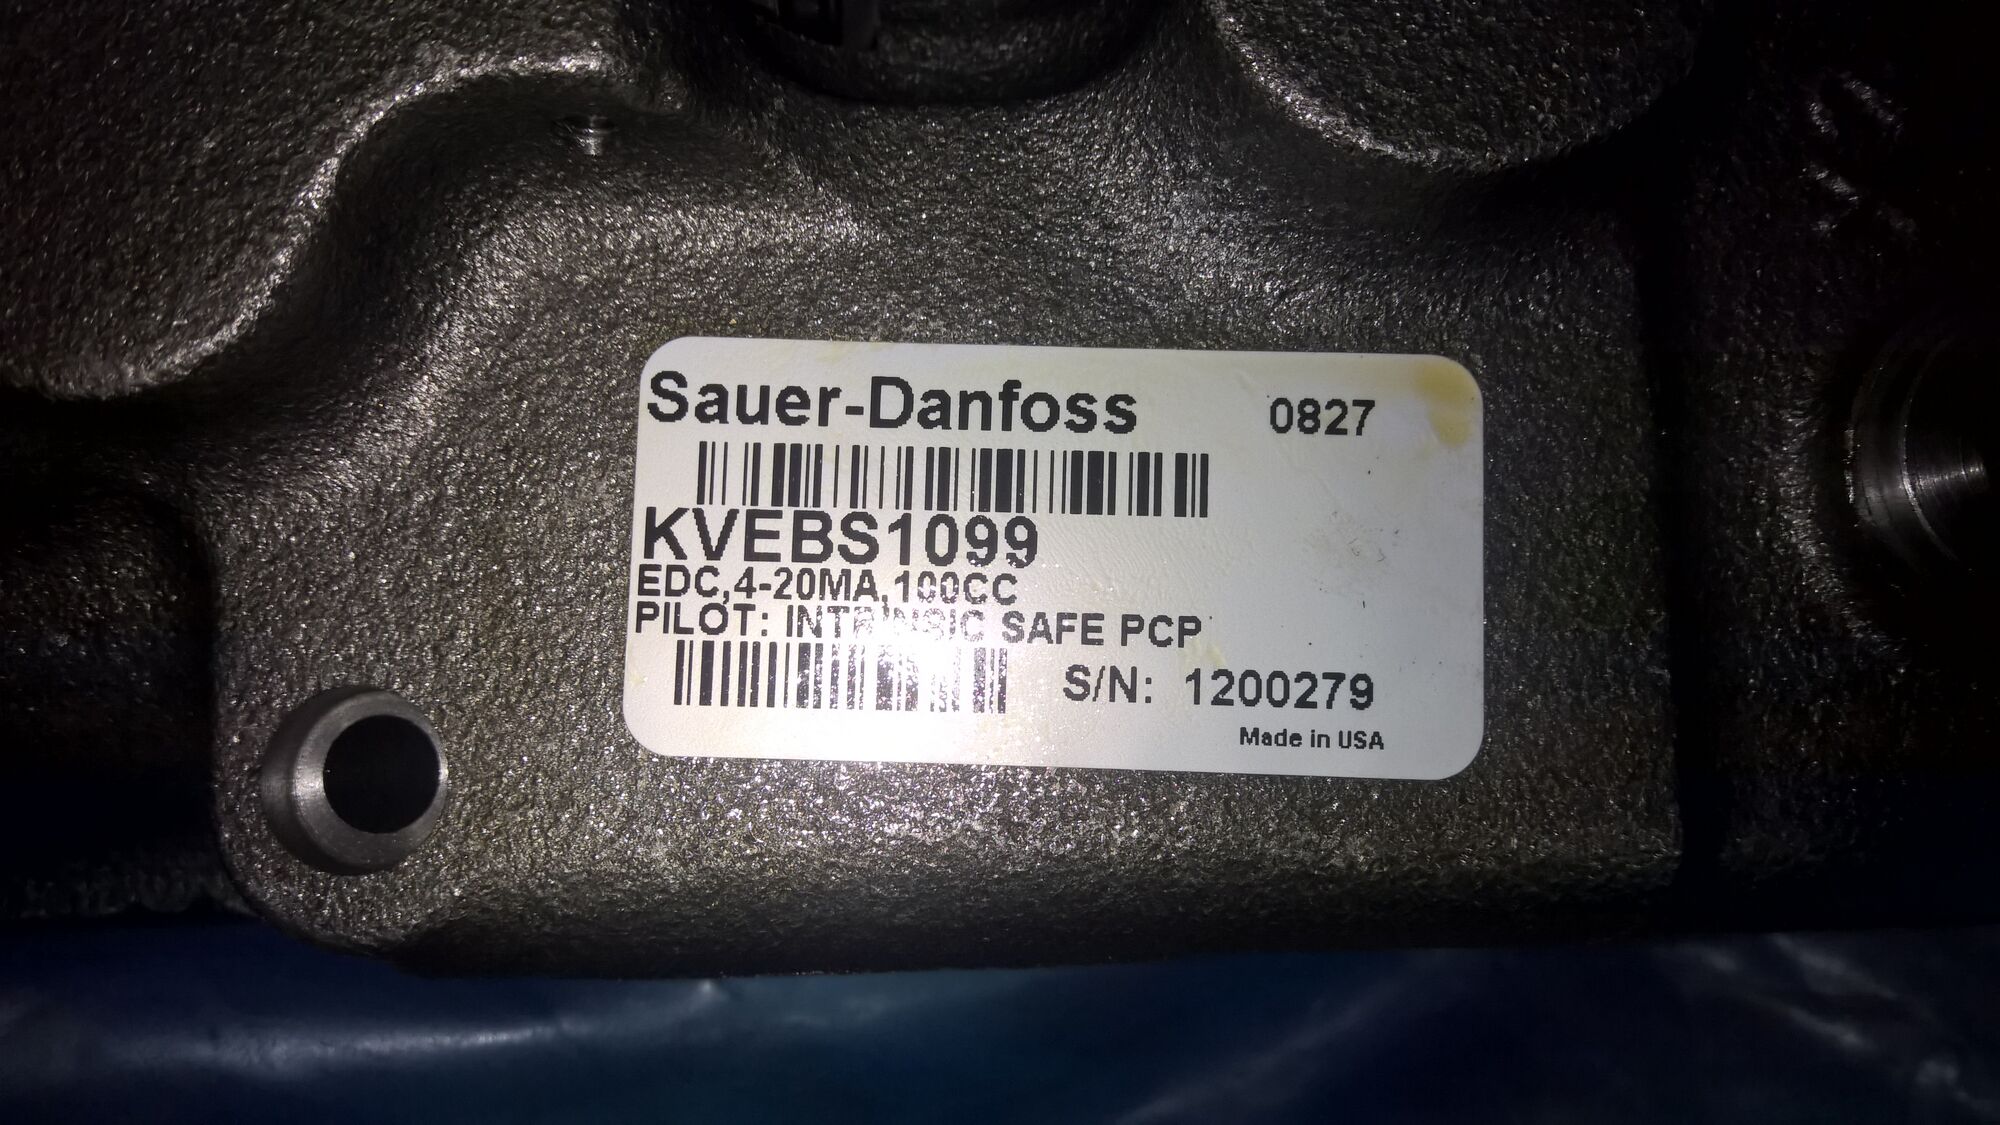 Клапан kvebs1099 управления гидронасосом 90PV100 Danfoss Power Solutions, Зауэр Данфосс. 13